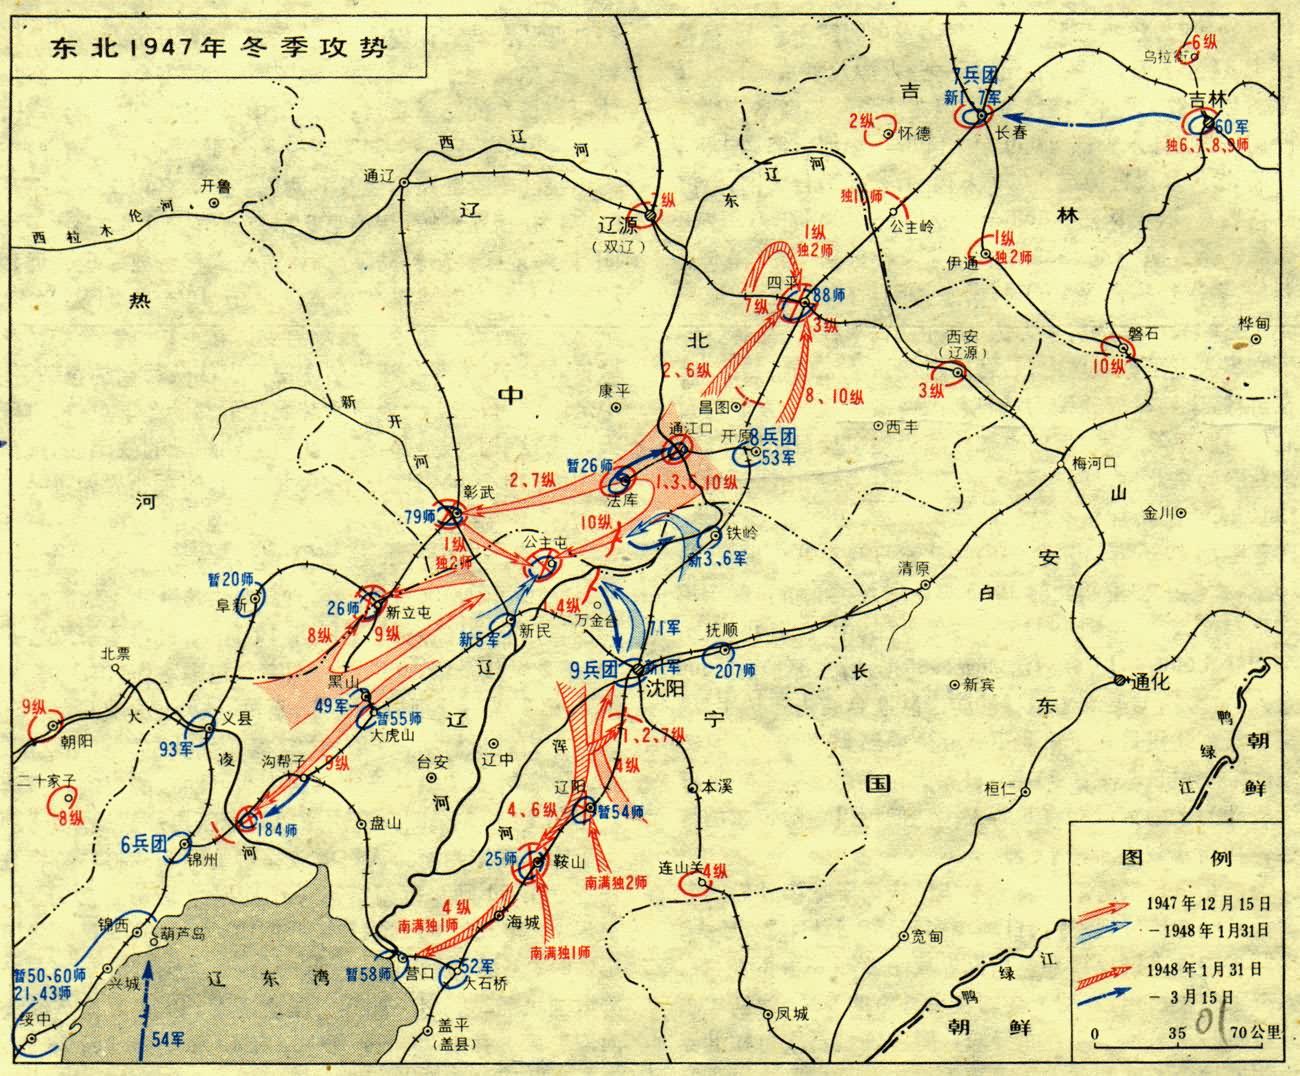 冬季攻势发起前,东北人民解放军总部令第8,第9纵队由朝阳地区东进